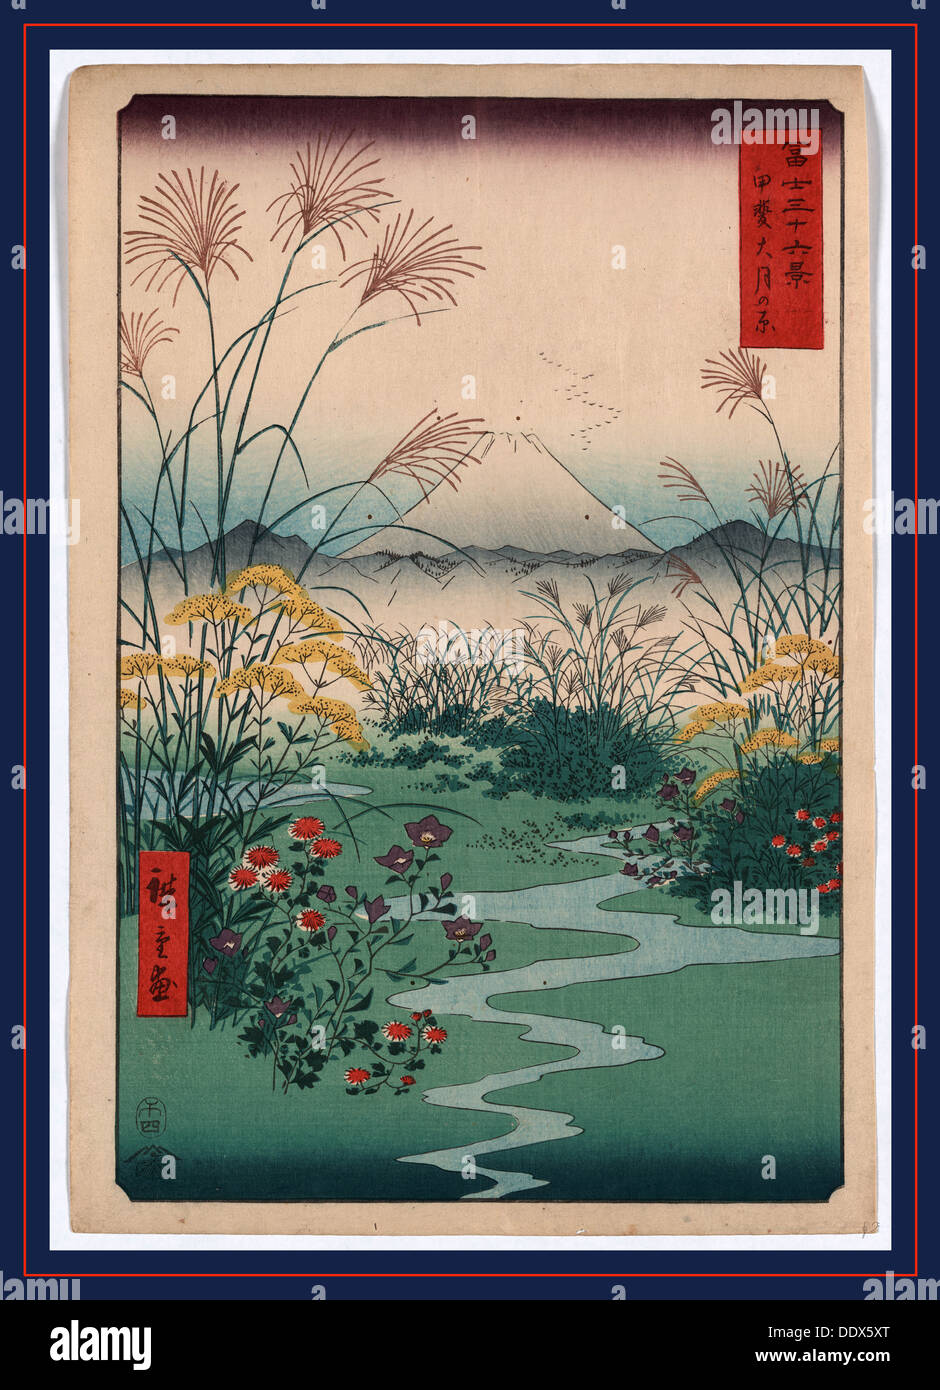 Kai outsuki no hara, Otsuki fields in Kai Province. 1858., 1 print : woodcut, color ; 36 x 24.8 cm., Print shows wild flowers Stock Photo